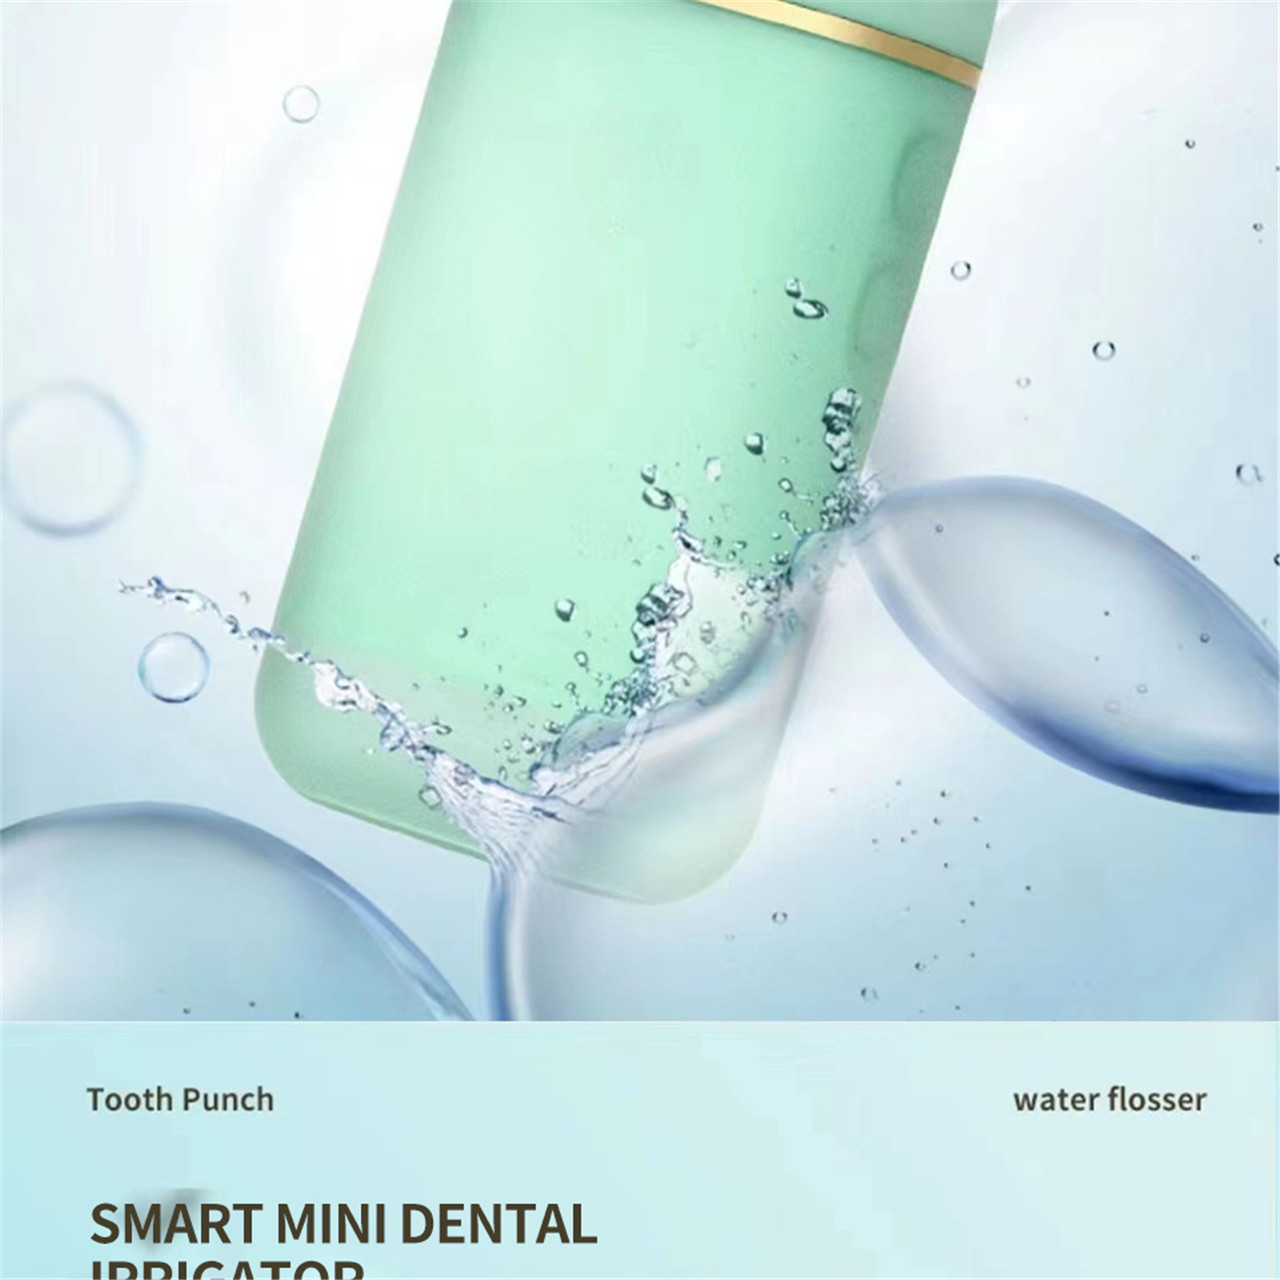 Дуран утасгүй зөөврийн шүдний амны хөндийн усалгааны цахилгаан утас (9)